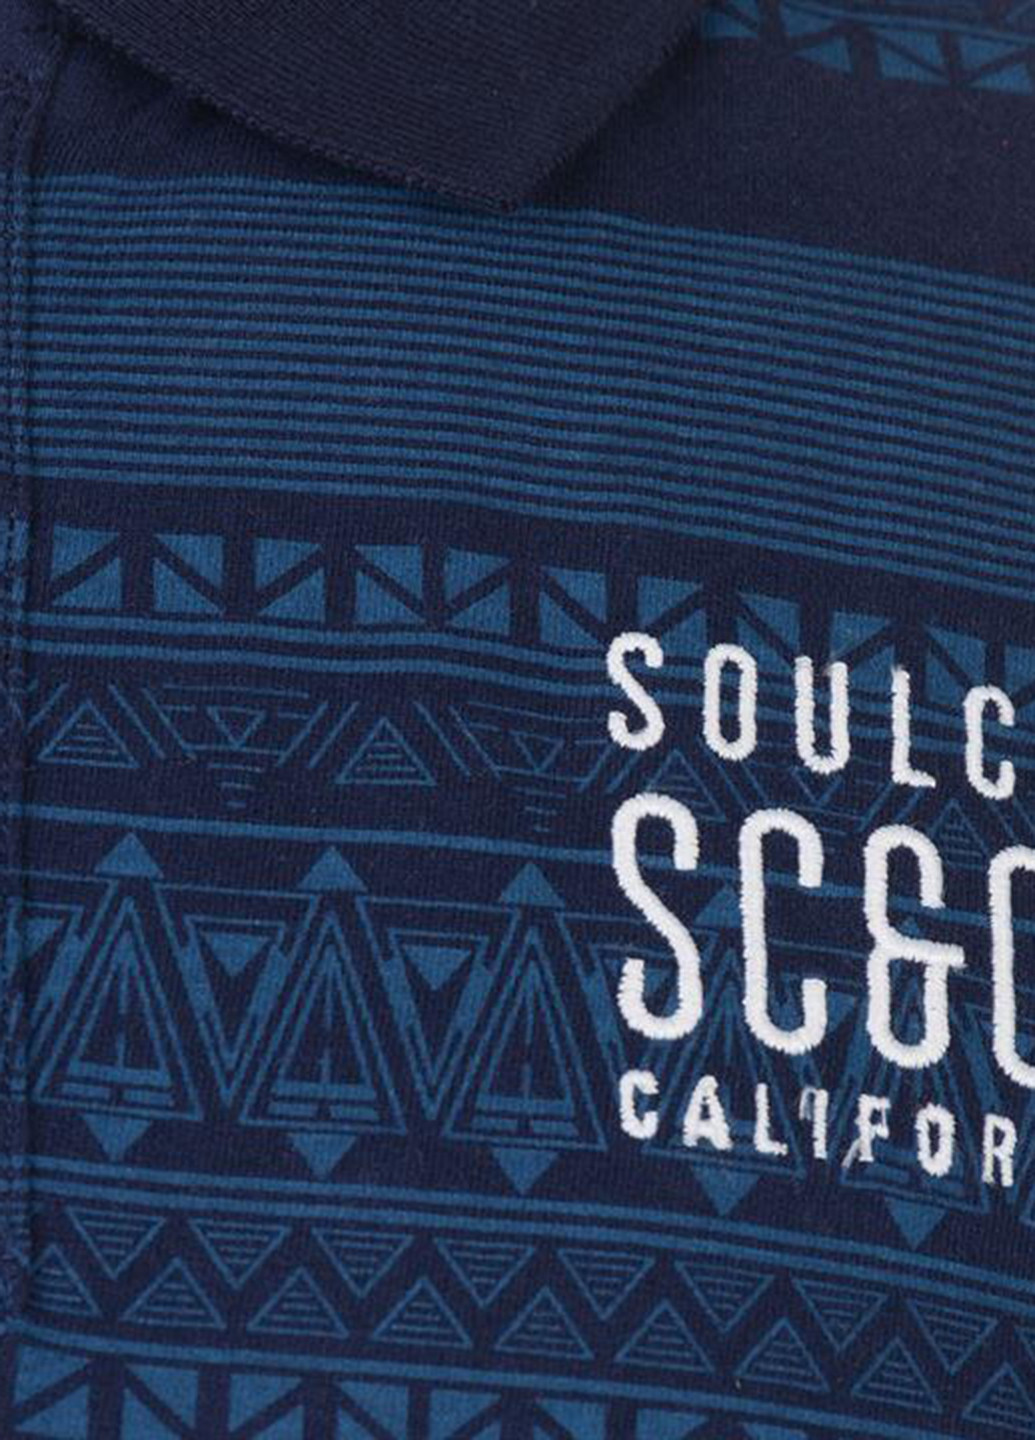 Темно-синяя футболка-поло для мужчин Soulcal & Co с надписью